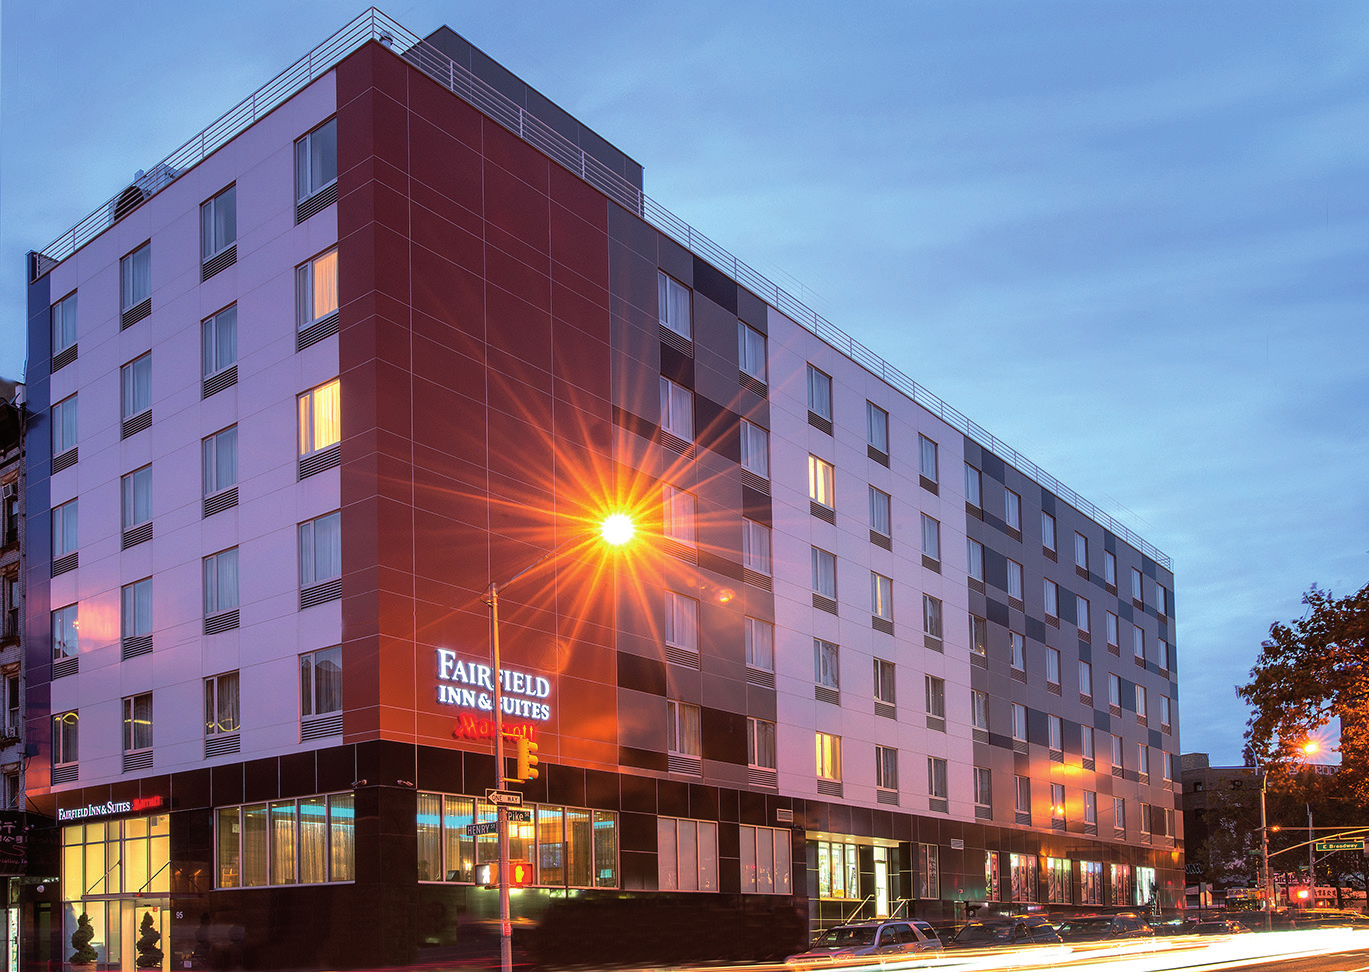 Fairfield Inn & Suites Downtown East *** 95 Henry Street Wij bevelen je dit uitstekende 3 sterren hotel van harte aan.